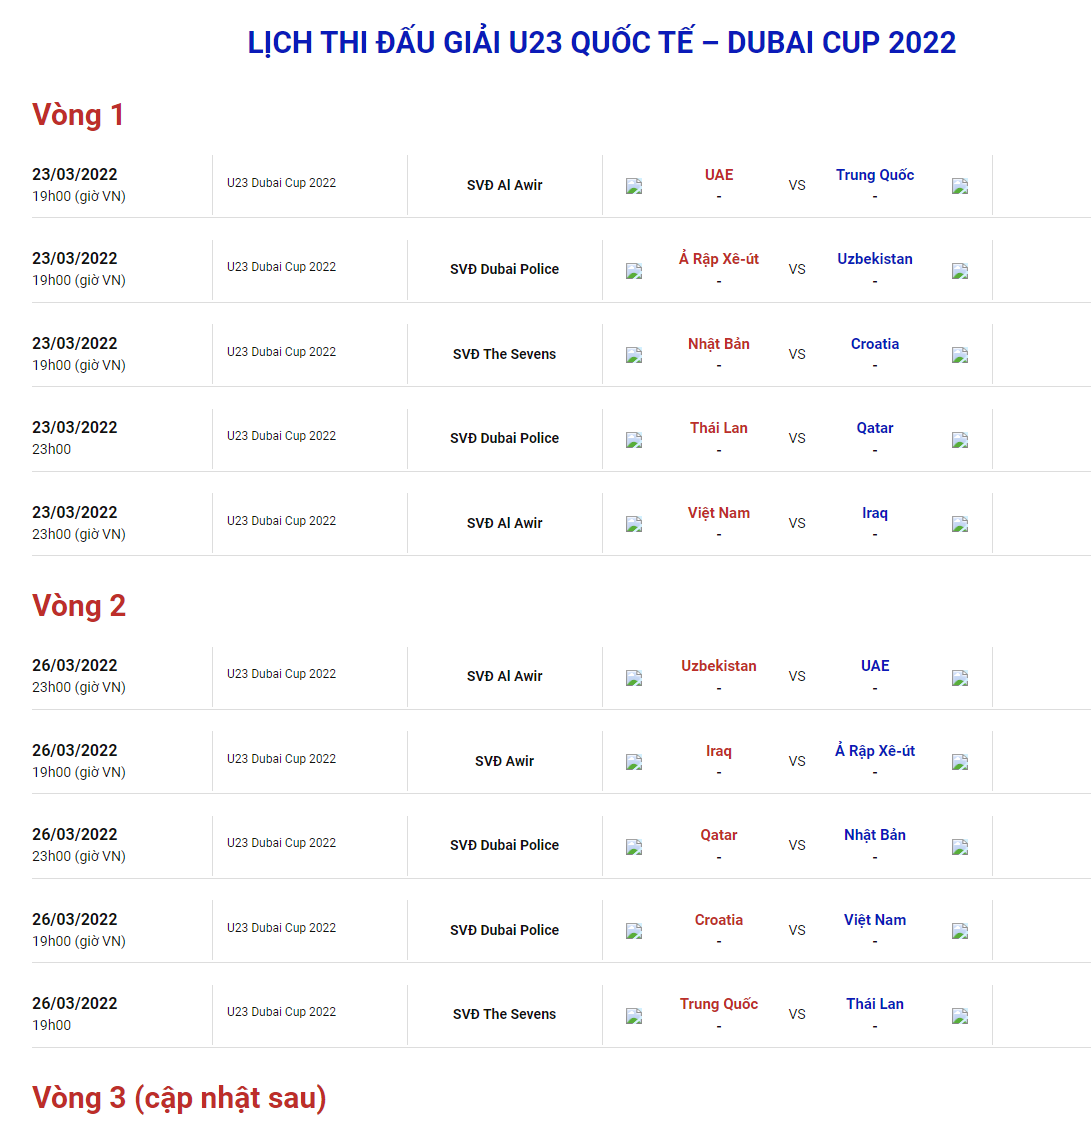 Lịch thi đấu U23 Việt Nam tại Dubai Cup 2022. Ảnh chụp màn hình